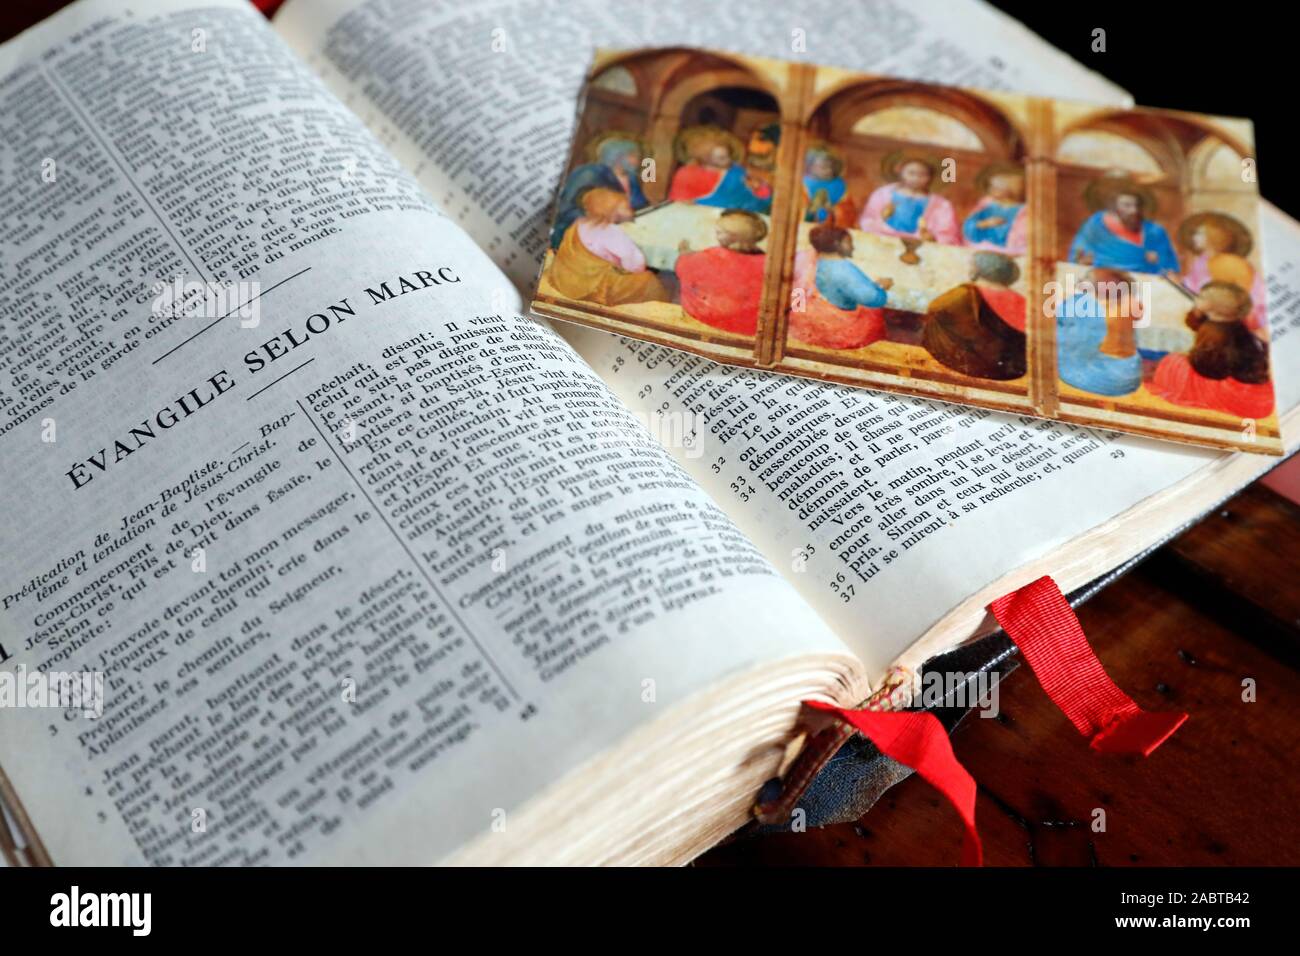 Vieille bible ouverte. Image religieuse de la Dernière Cène. La France. Banque D'Images